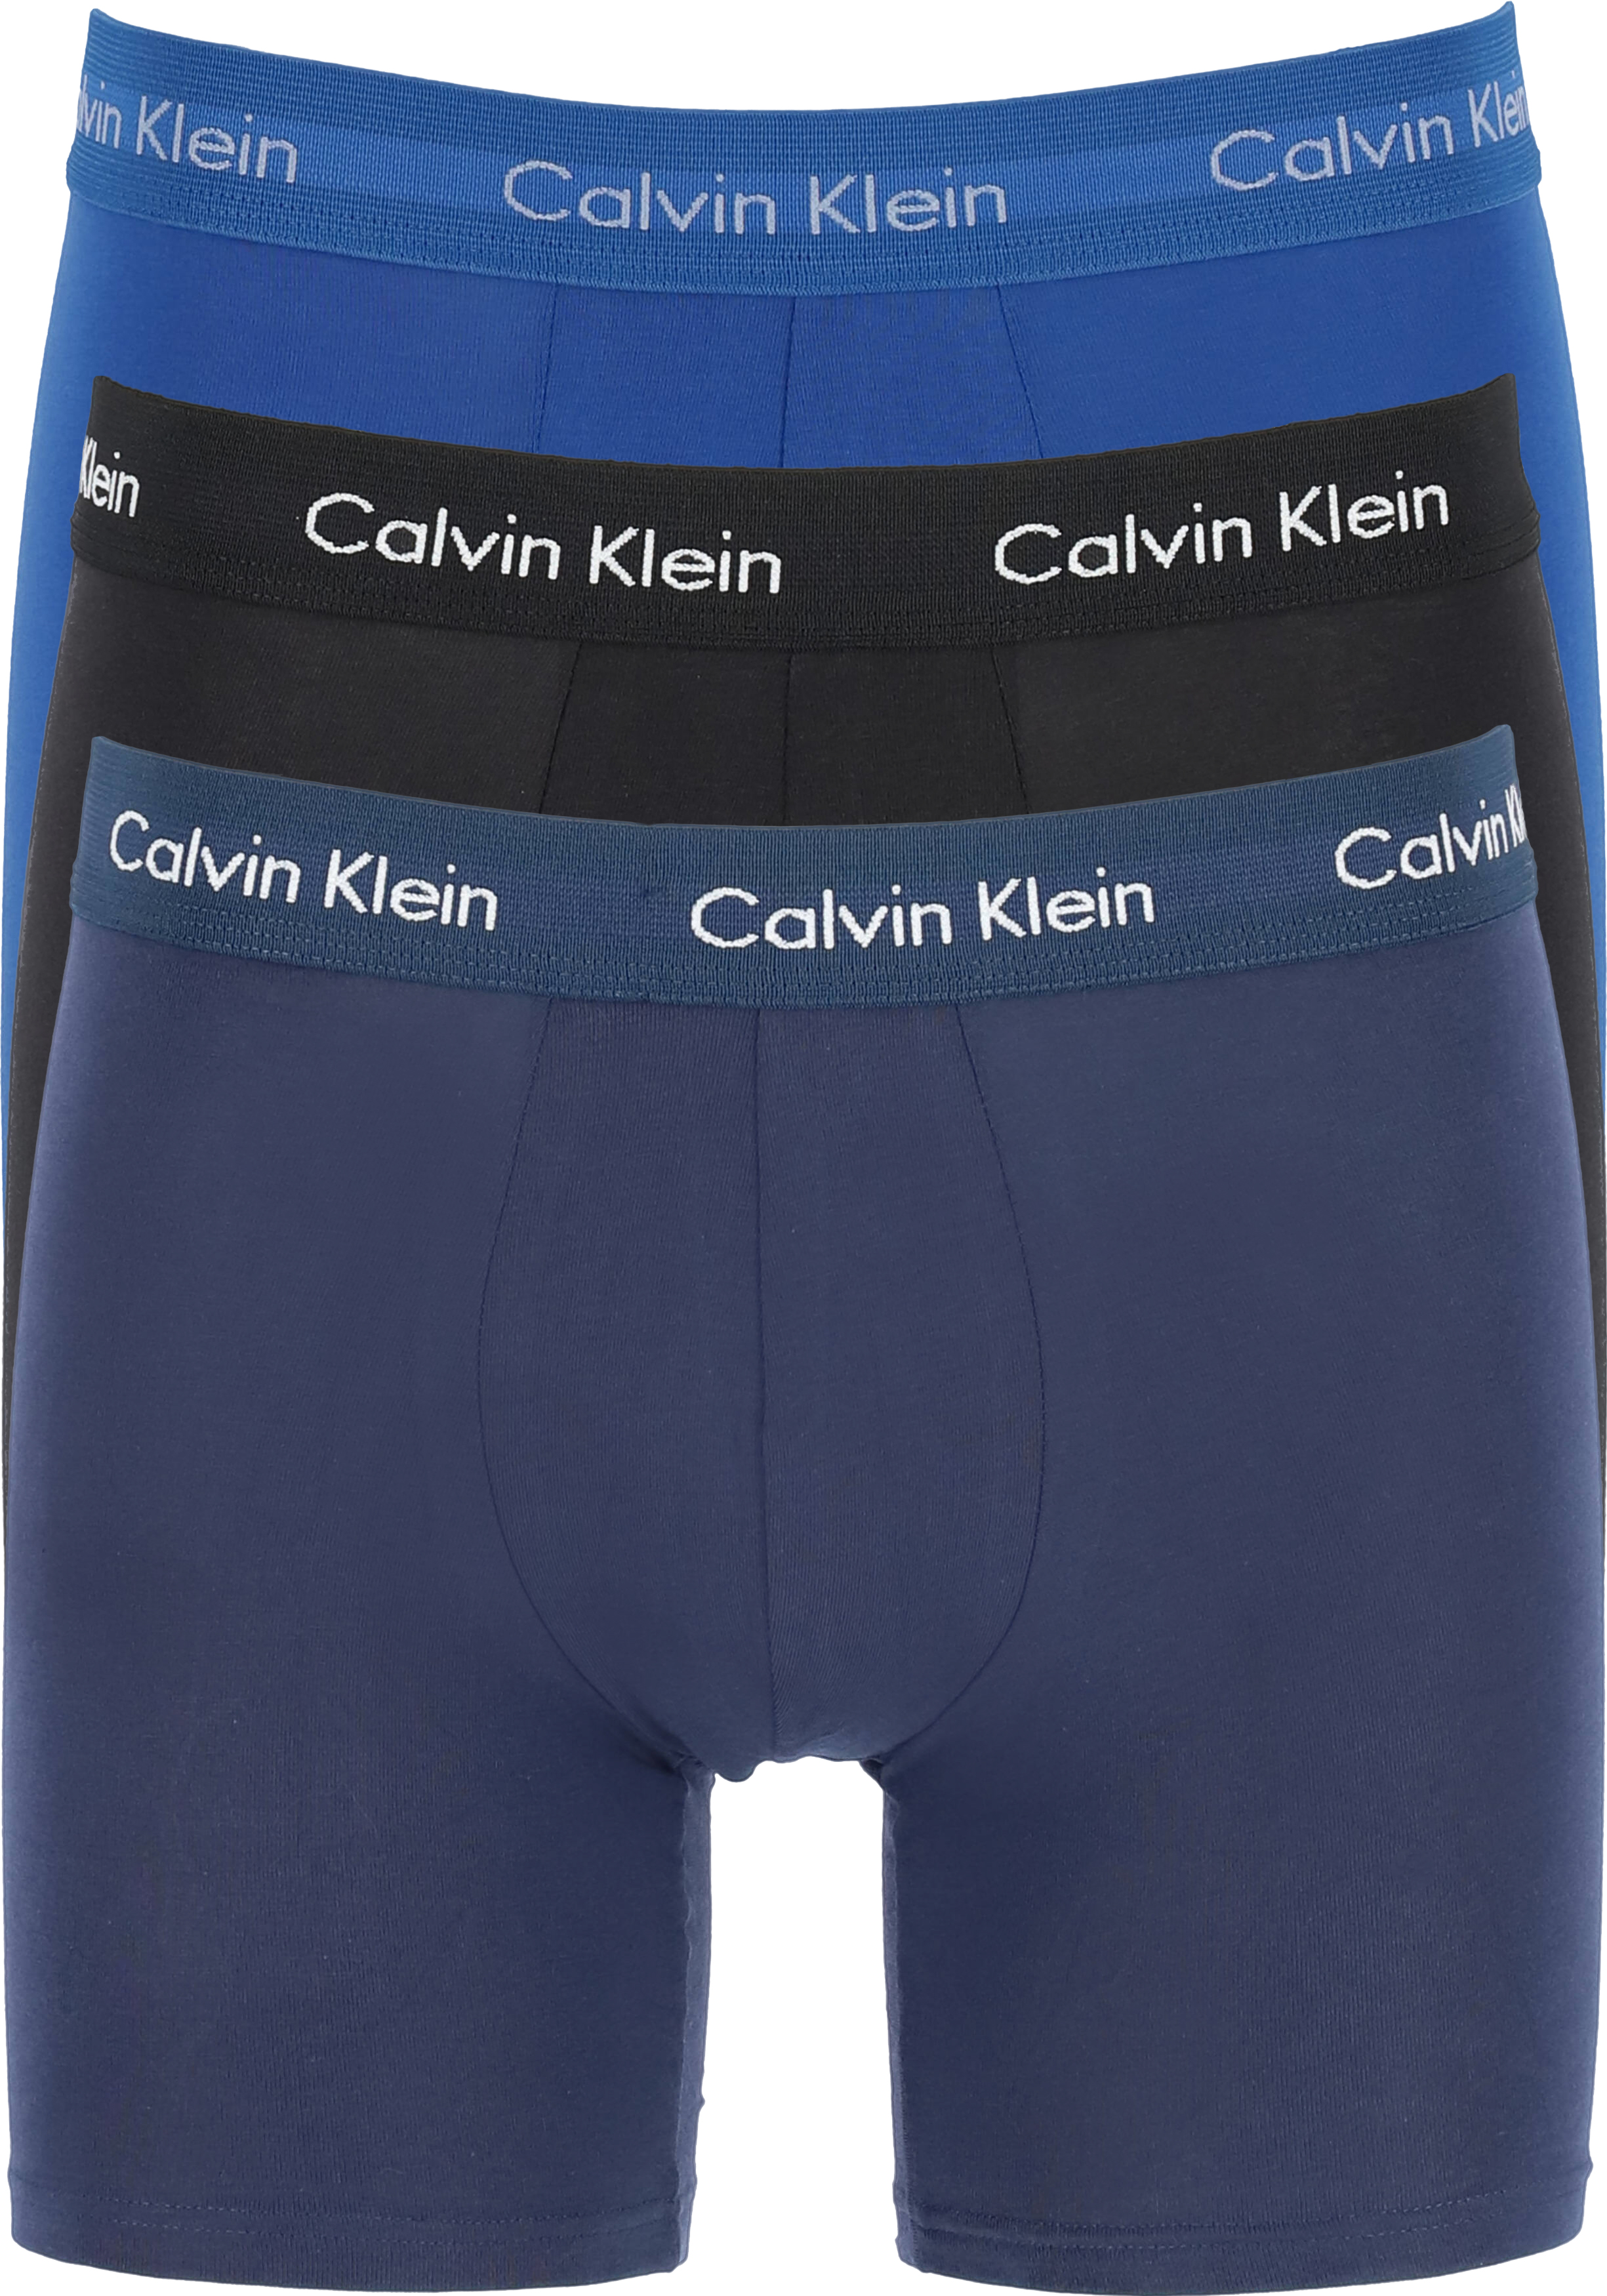 Calvin Klein Cotton boxer (3-pack), heren boxers extra... - Shop de voorjaarsmode